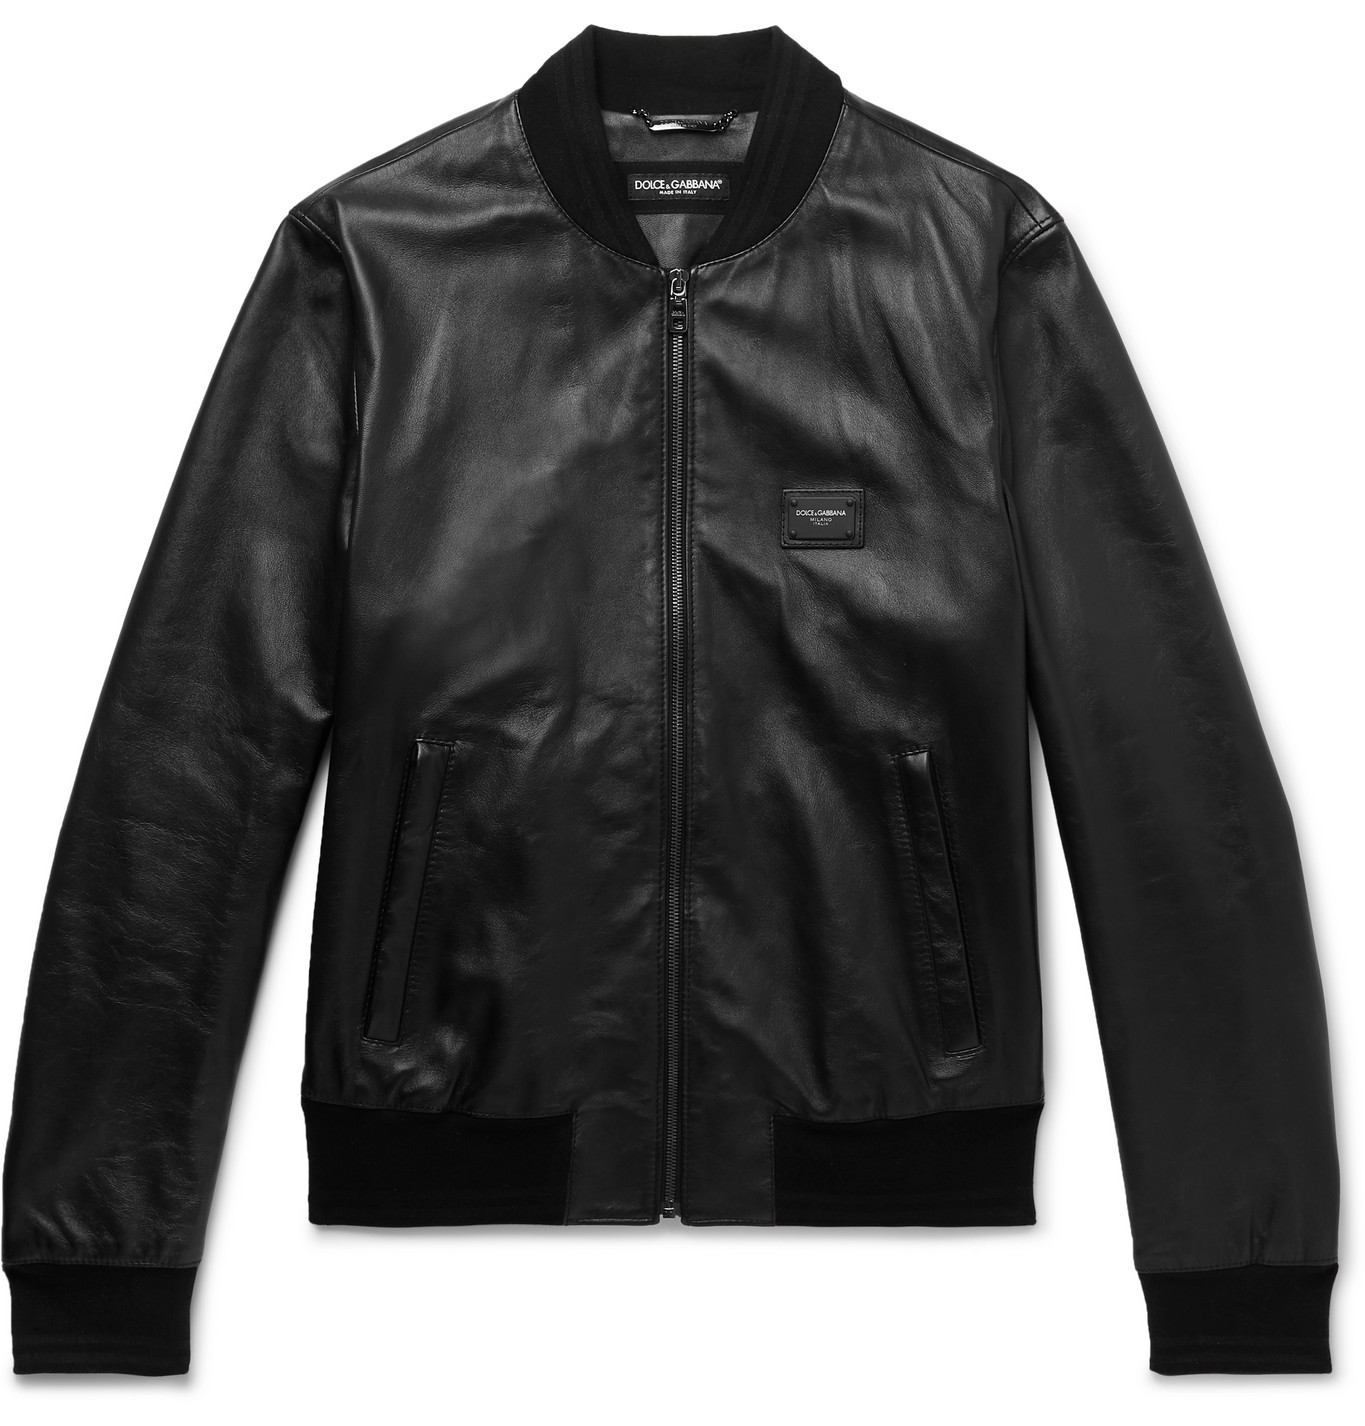 Dolce & Gabbana - Leather Bomber Jacket - Men - Black | The Fashionisto